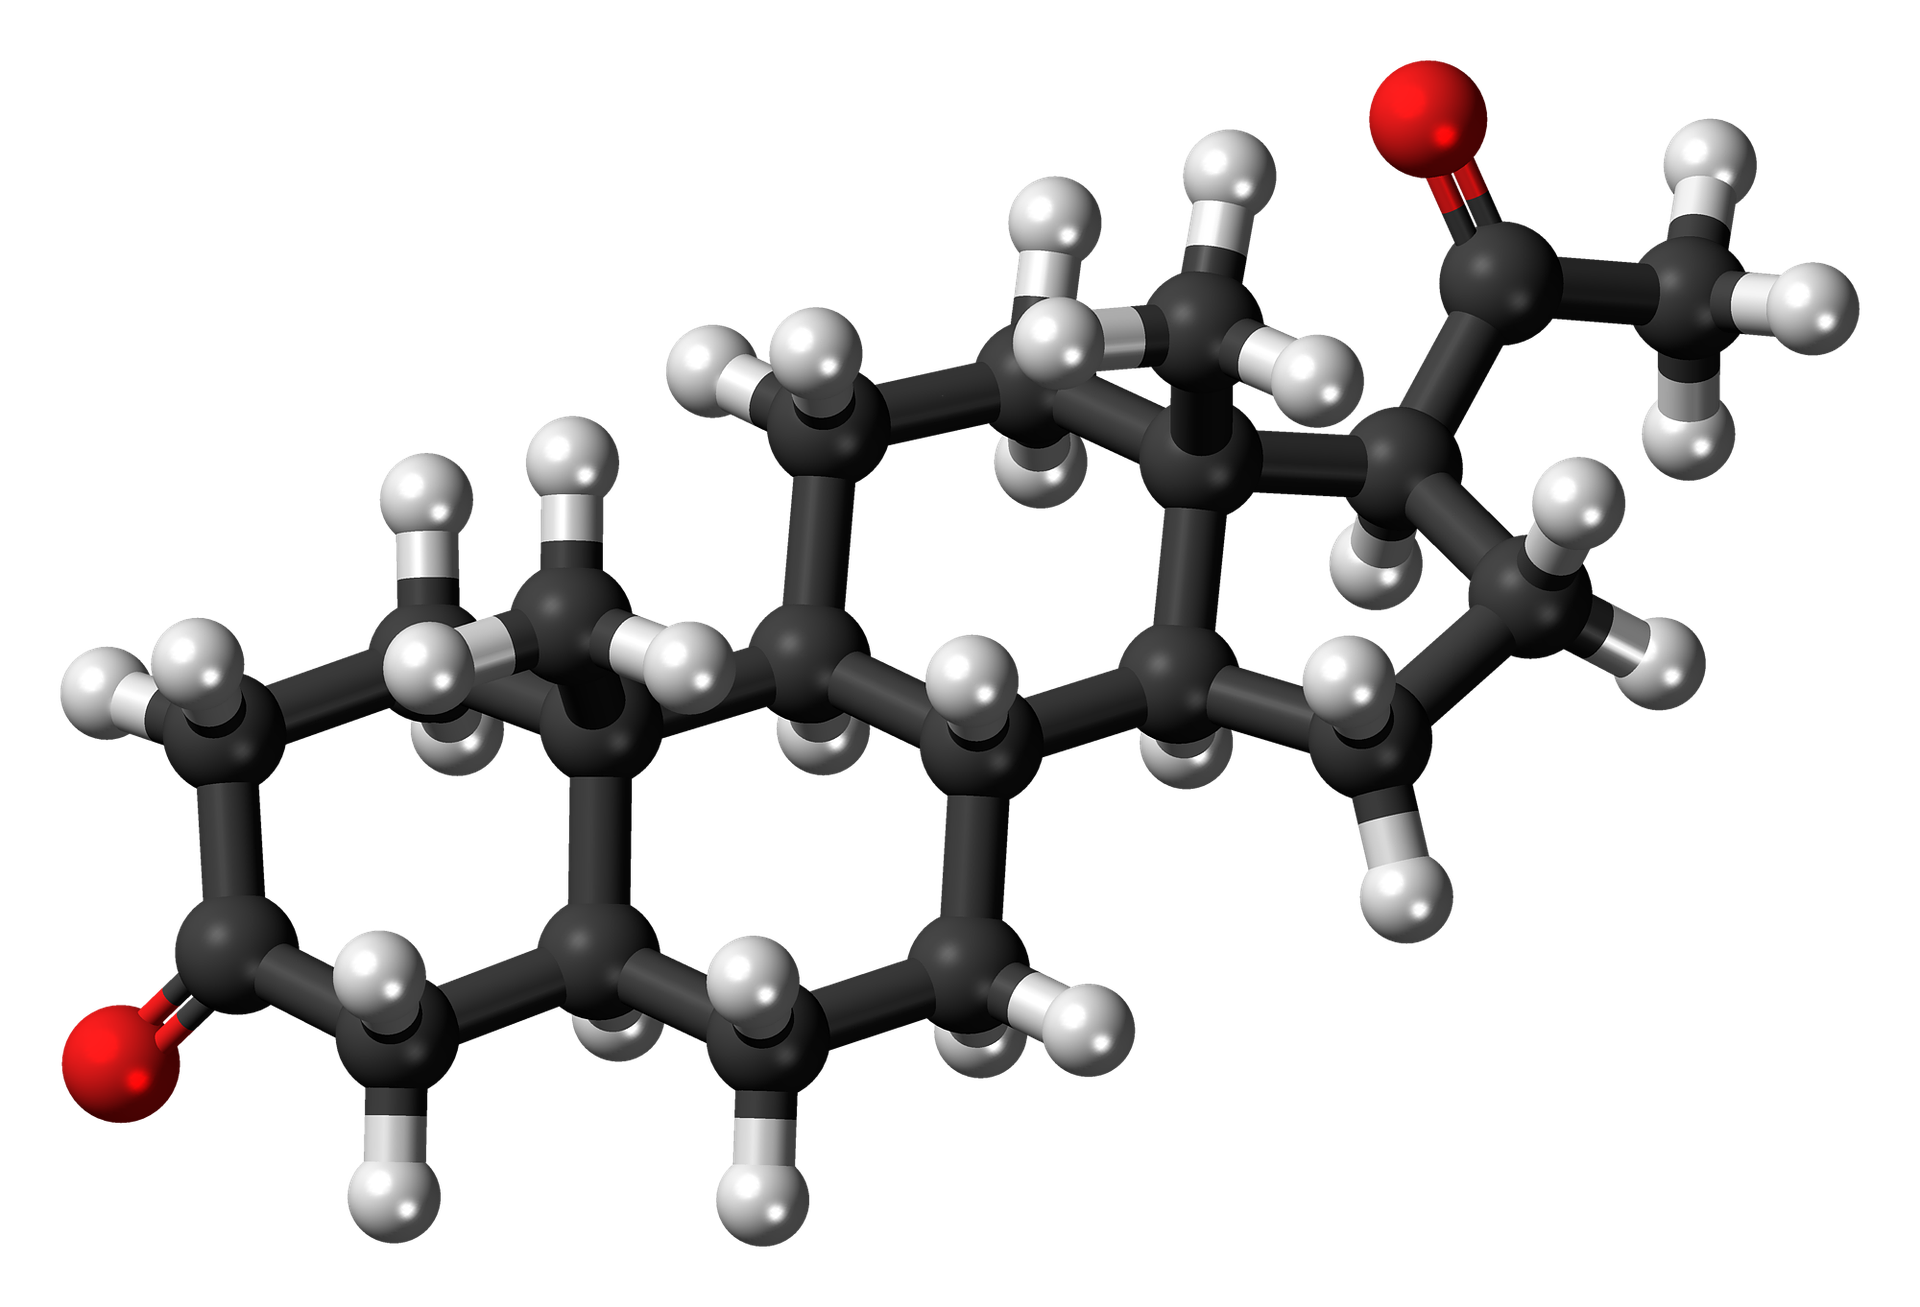 dihydroprogesterone 867429 1920